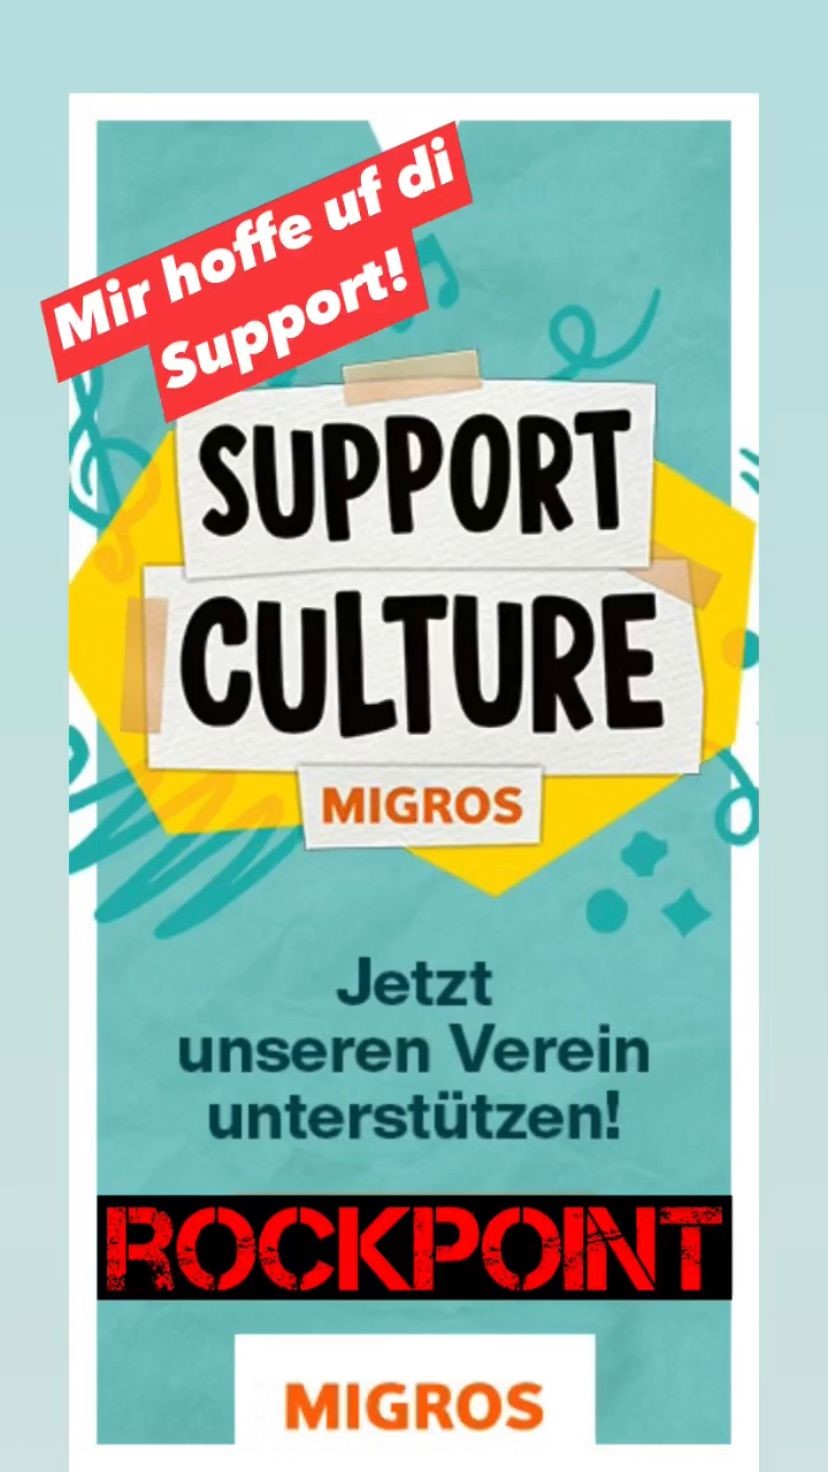 #supportculture der Migros - ROCKPOINT